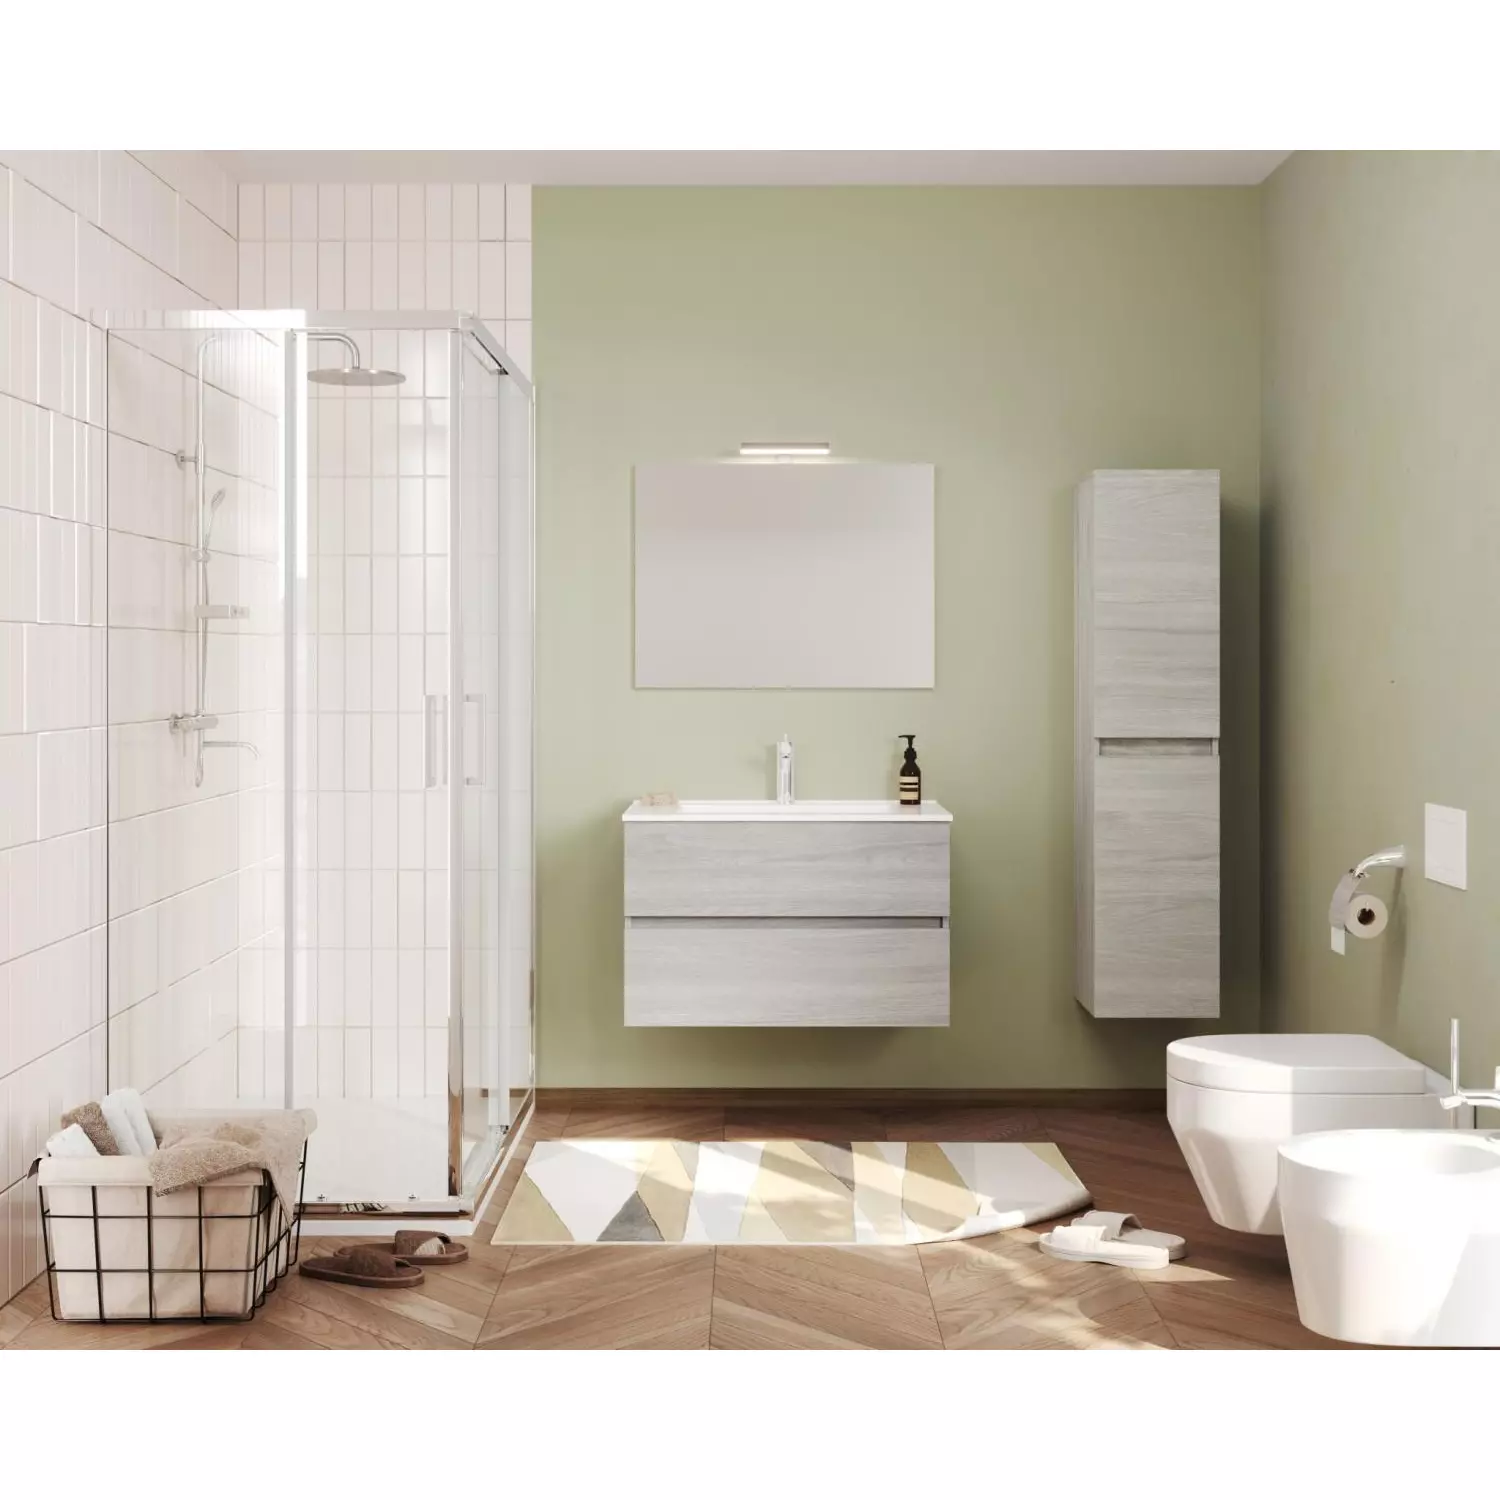 Easy 80cm-es két fiókos fürdőszobaszekrény szürke tölgy + mosdó